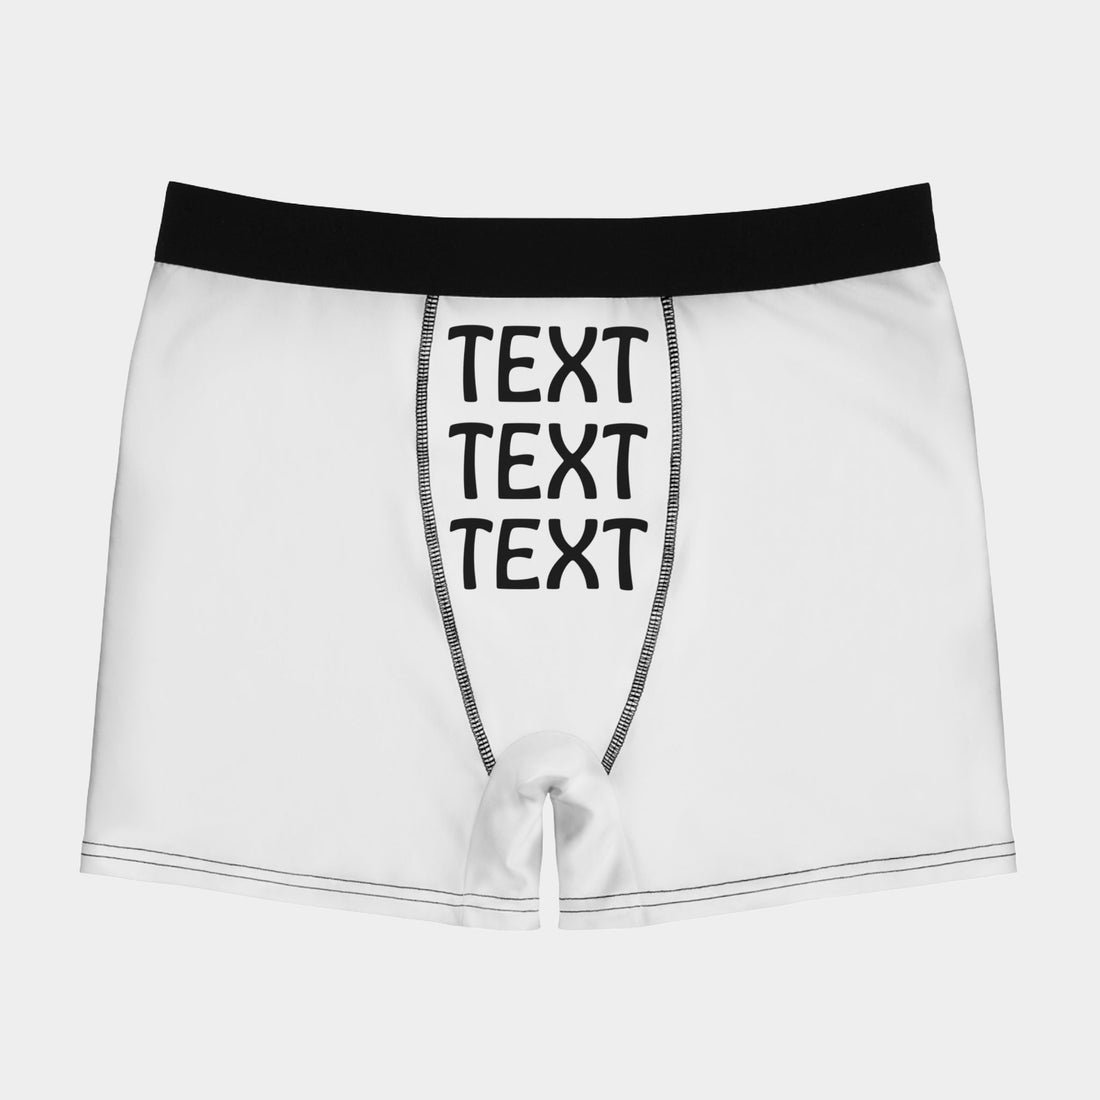 Personalisierte Boxershorts Für Männer Mit Wunschtext